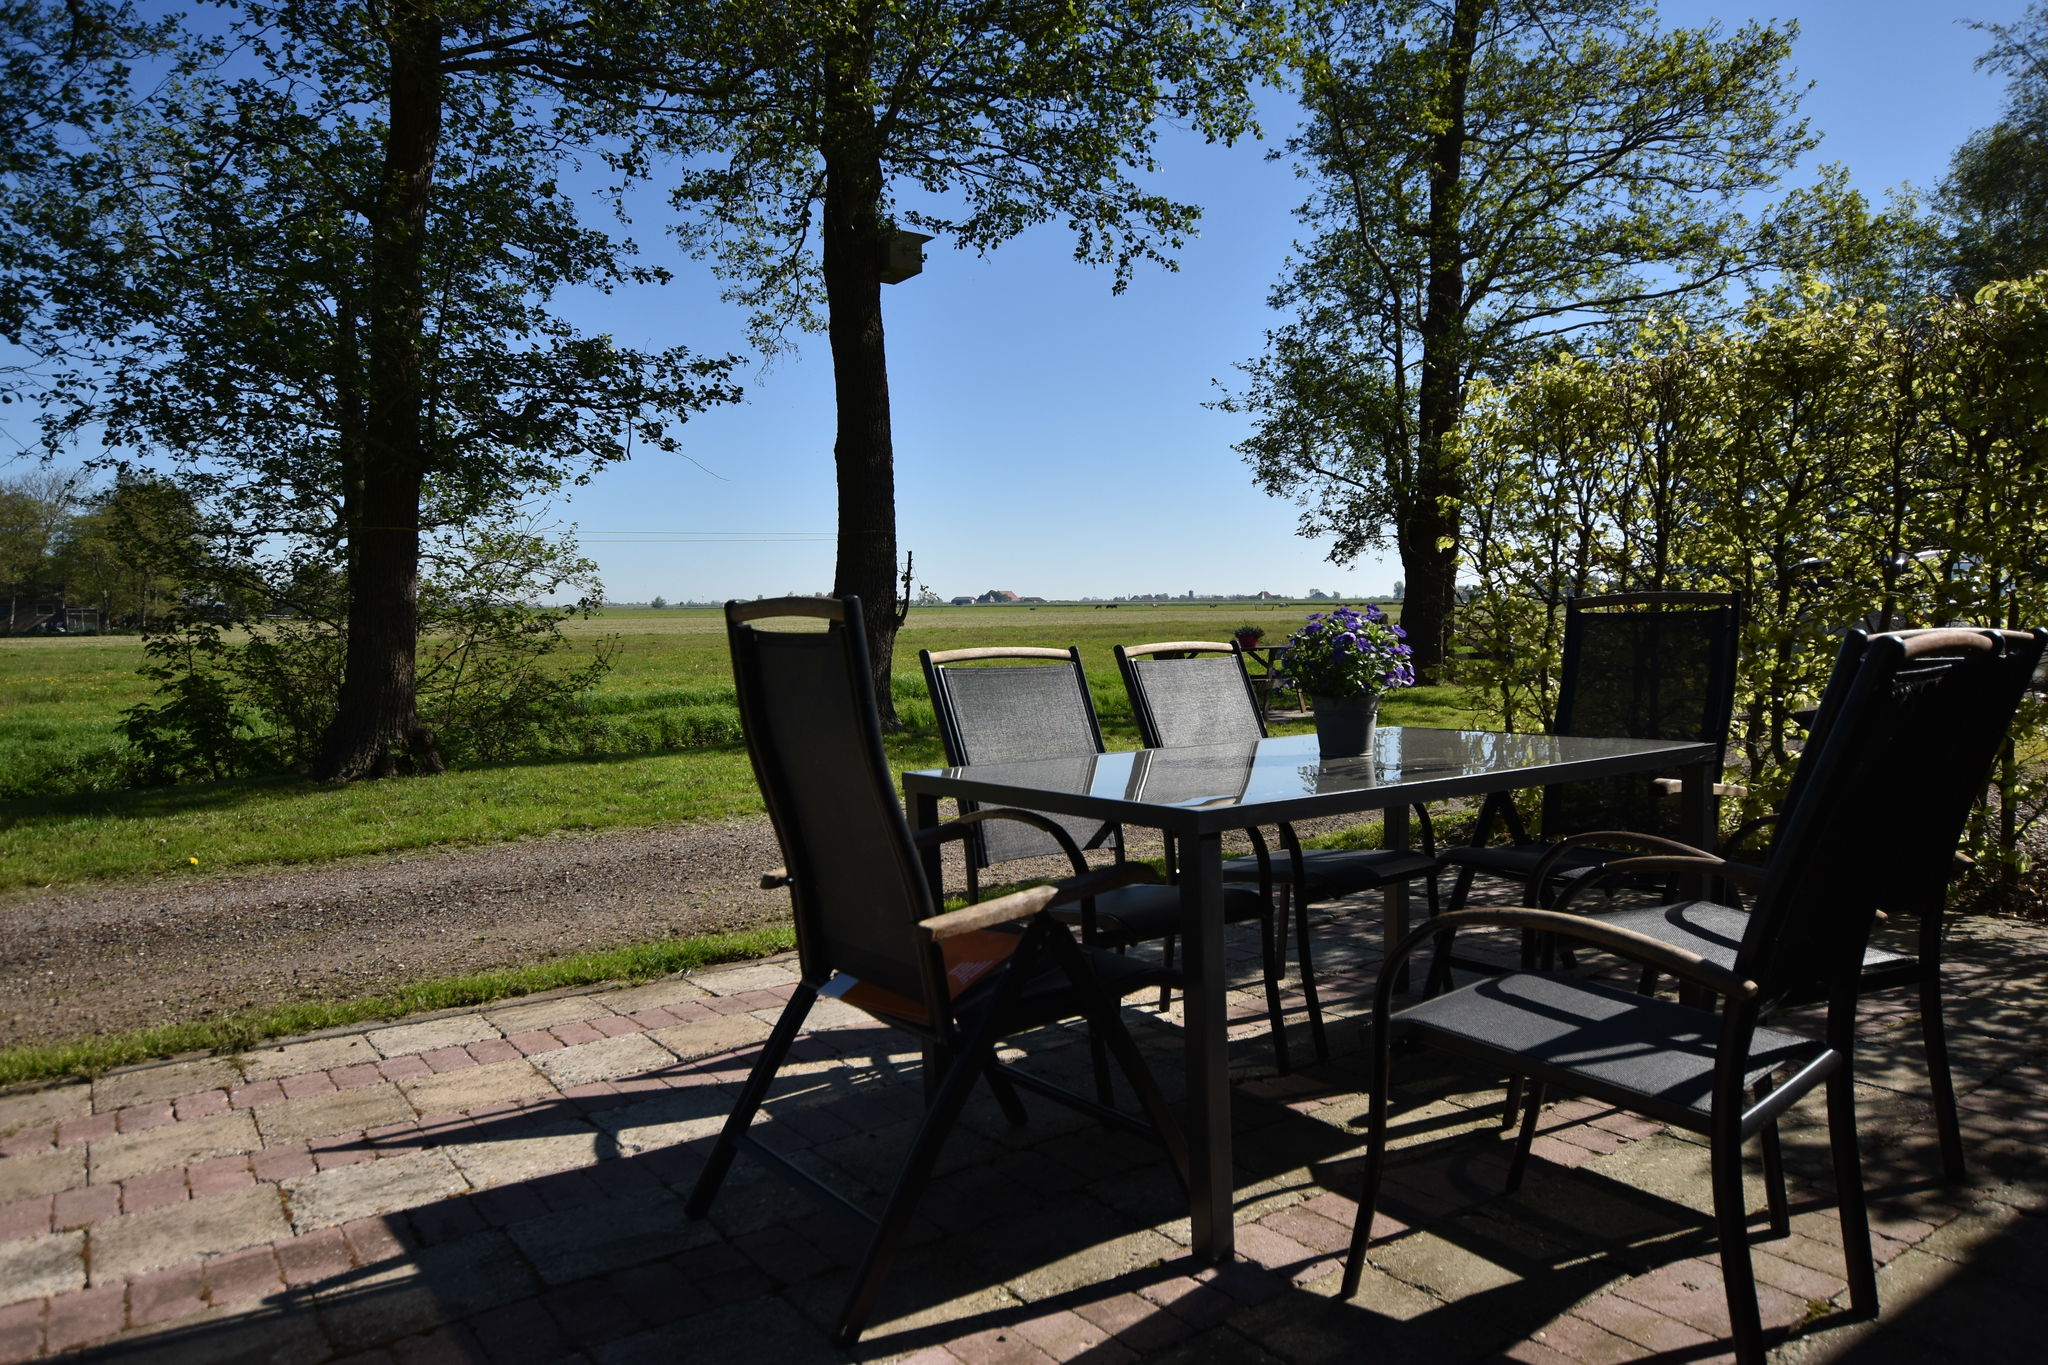 Landelijke vakantiewoning in het Friese Workum met een heerlijk zonnig terras